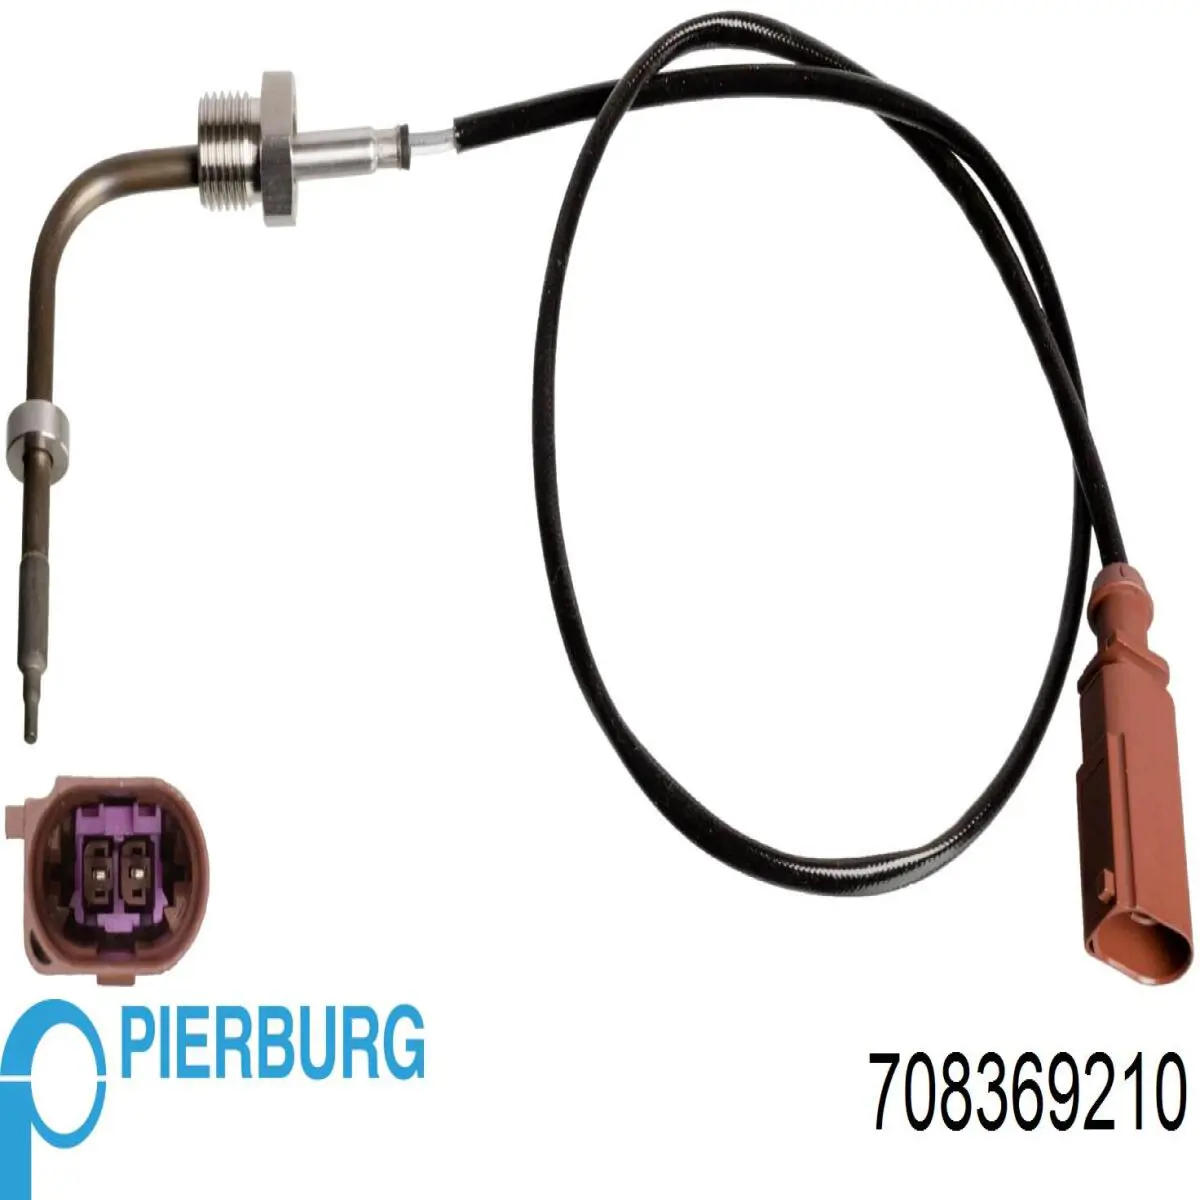 7.08369.21.0 Pierburg sensor de temperatura, gas de escape, filtro hollín/partículas